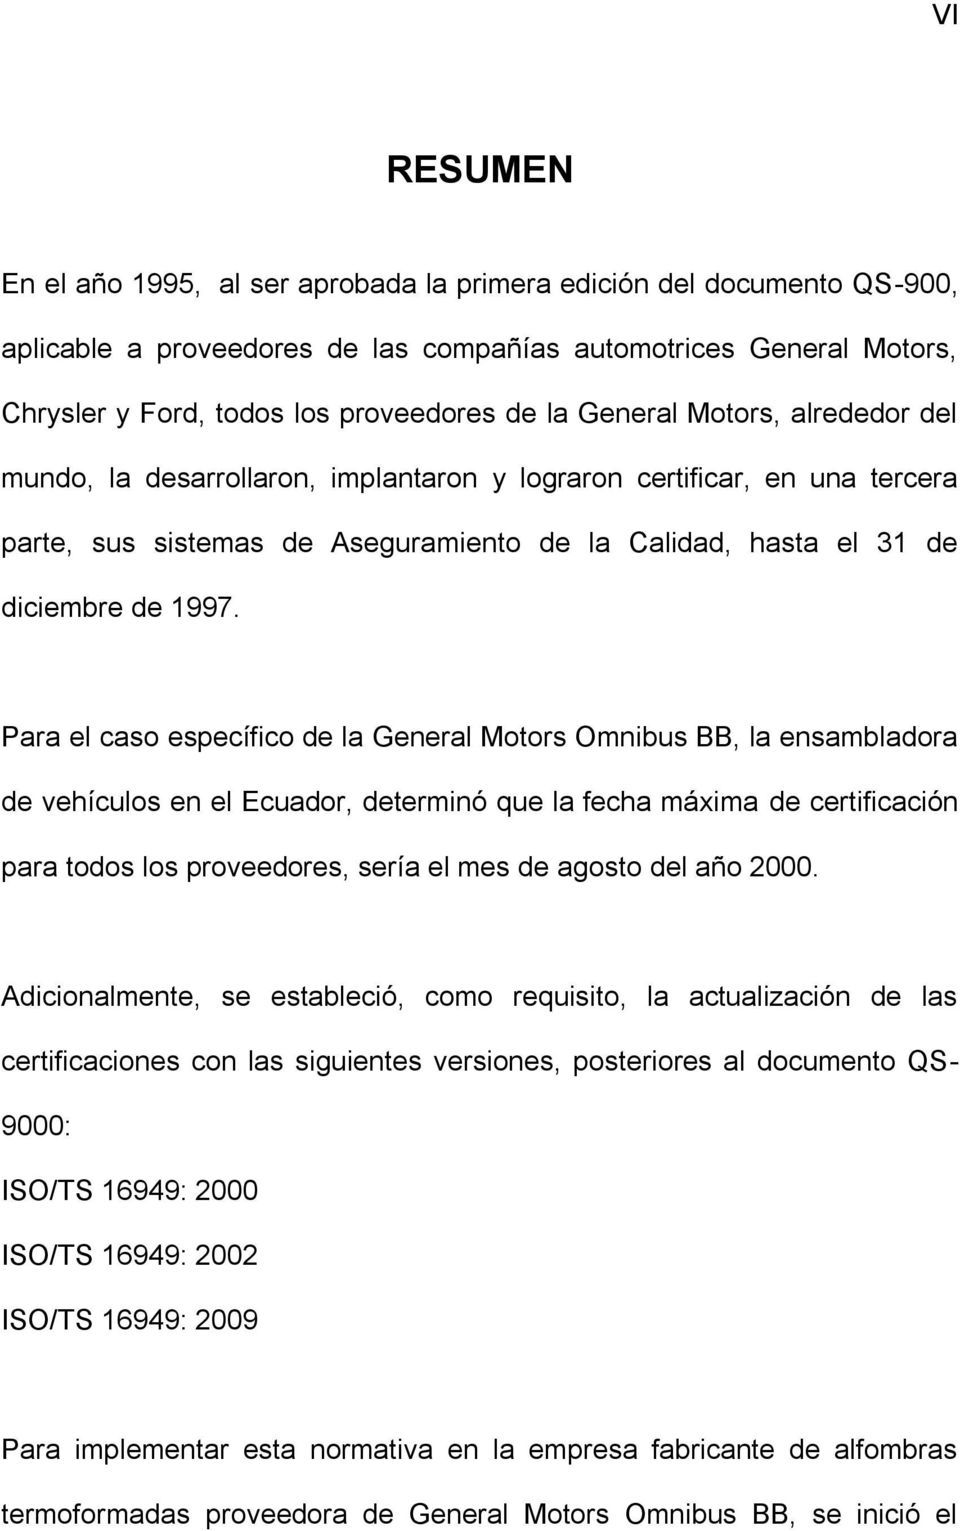 Para el caso específico de la General Motors Omnibus BB, la ensambladora de vehículos en el Ecuador, determinó que la fecha máxima de certificación para todos los proveedores, sería el mes de agosto